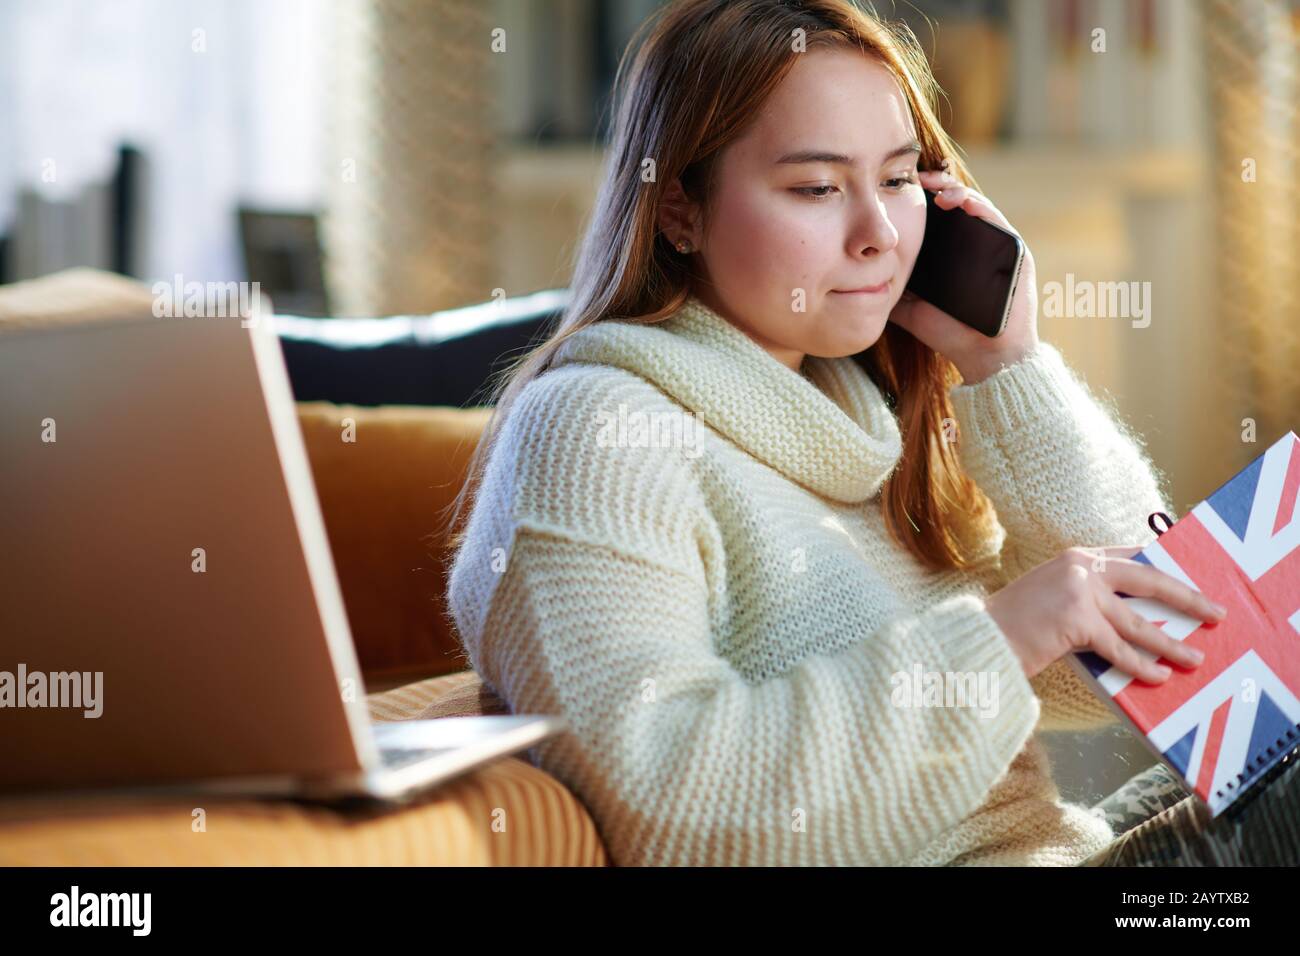 Inquiète jeune femme moderne avec des cheveux rouges dans un pull blanc avec des couleurs d'ordinateur portable et de portable du drapeau britannique parlant sur un téléphone portable dans le hous moderne Banque D'Images